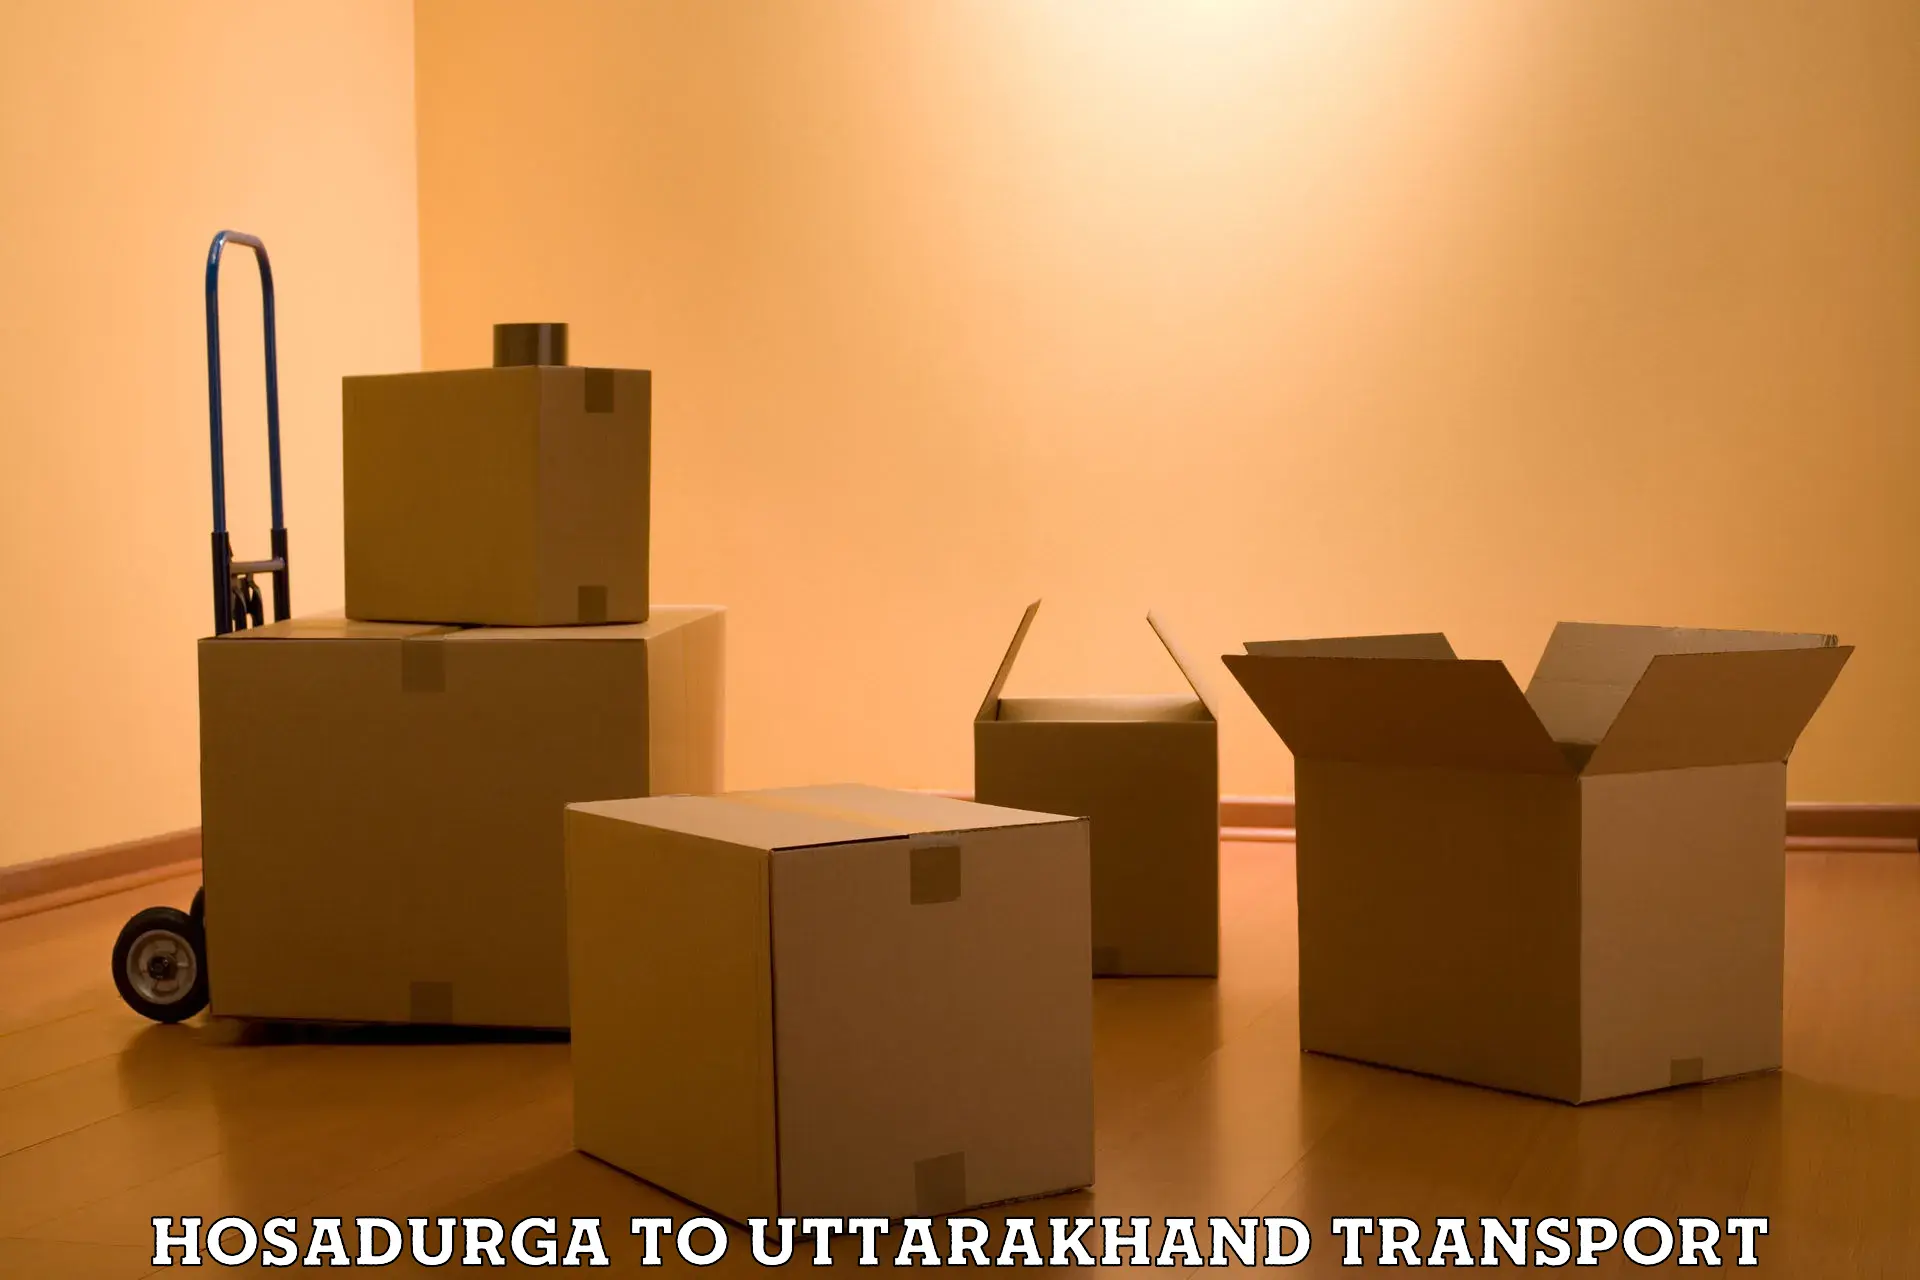 Lorry transport service Hosadurga to IIT Roorkee